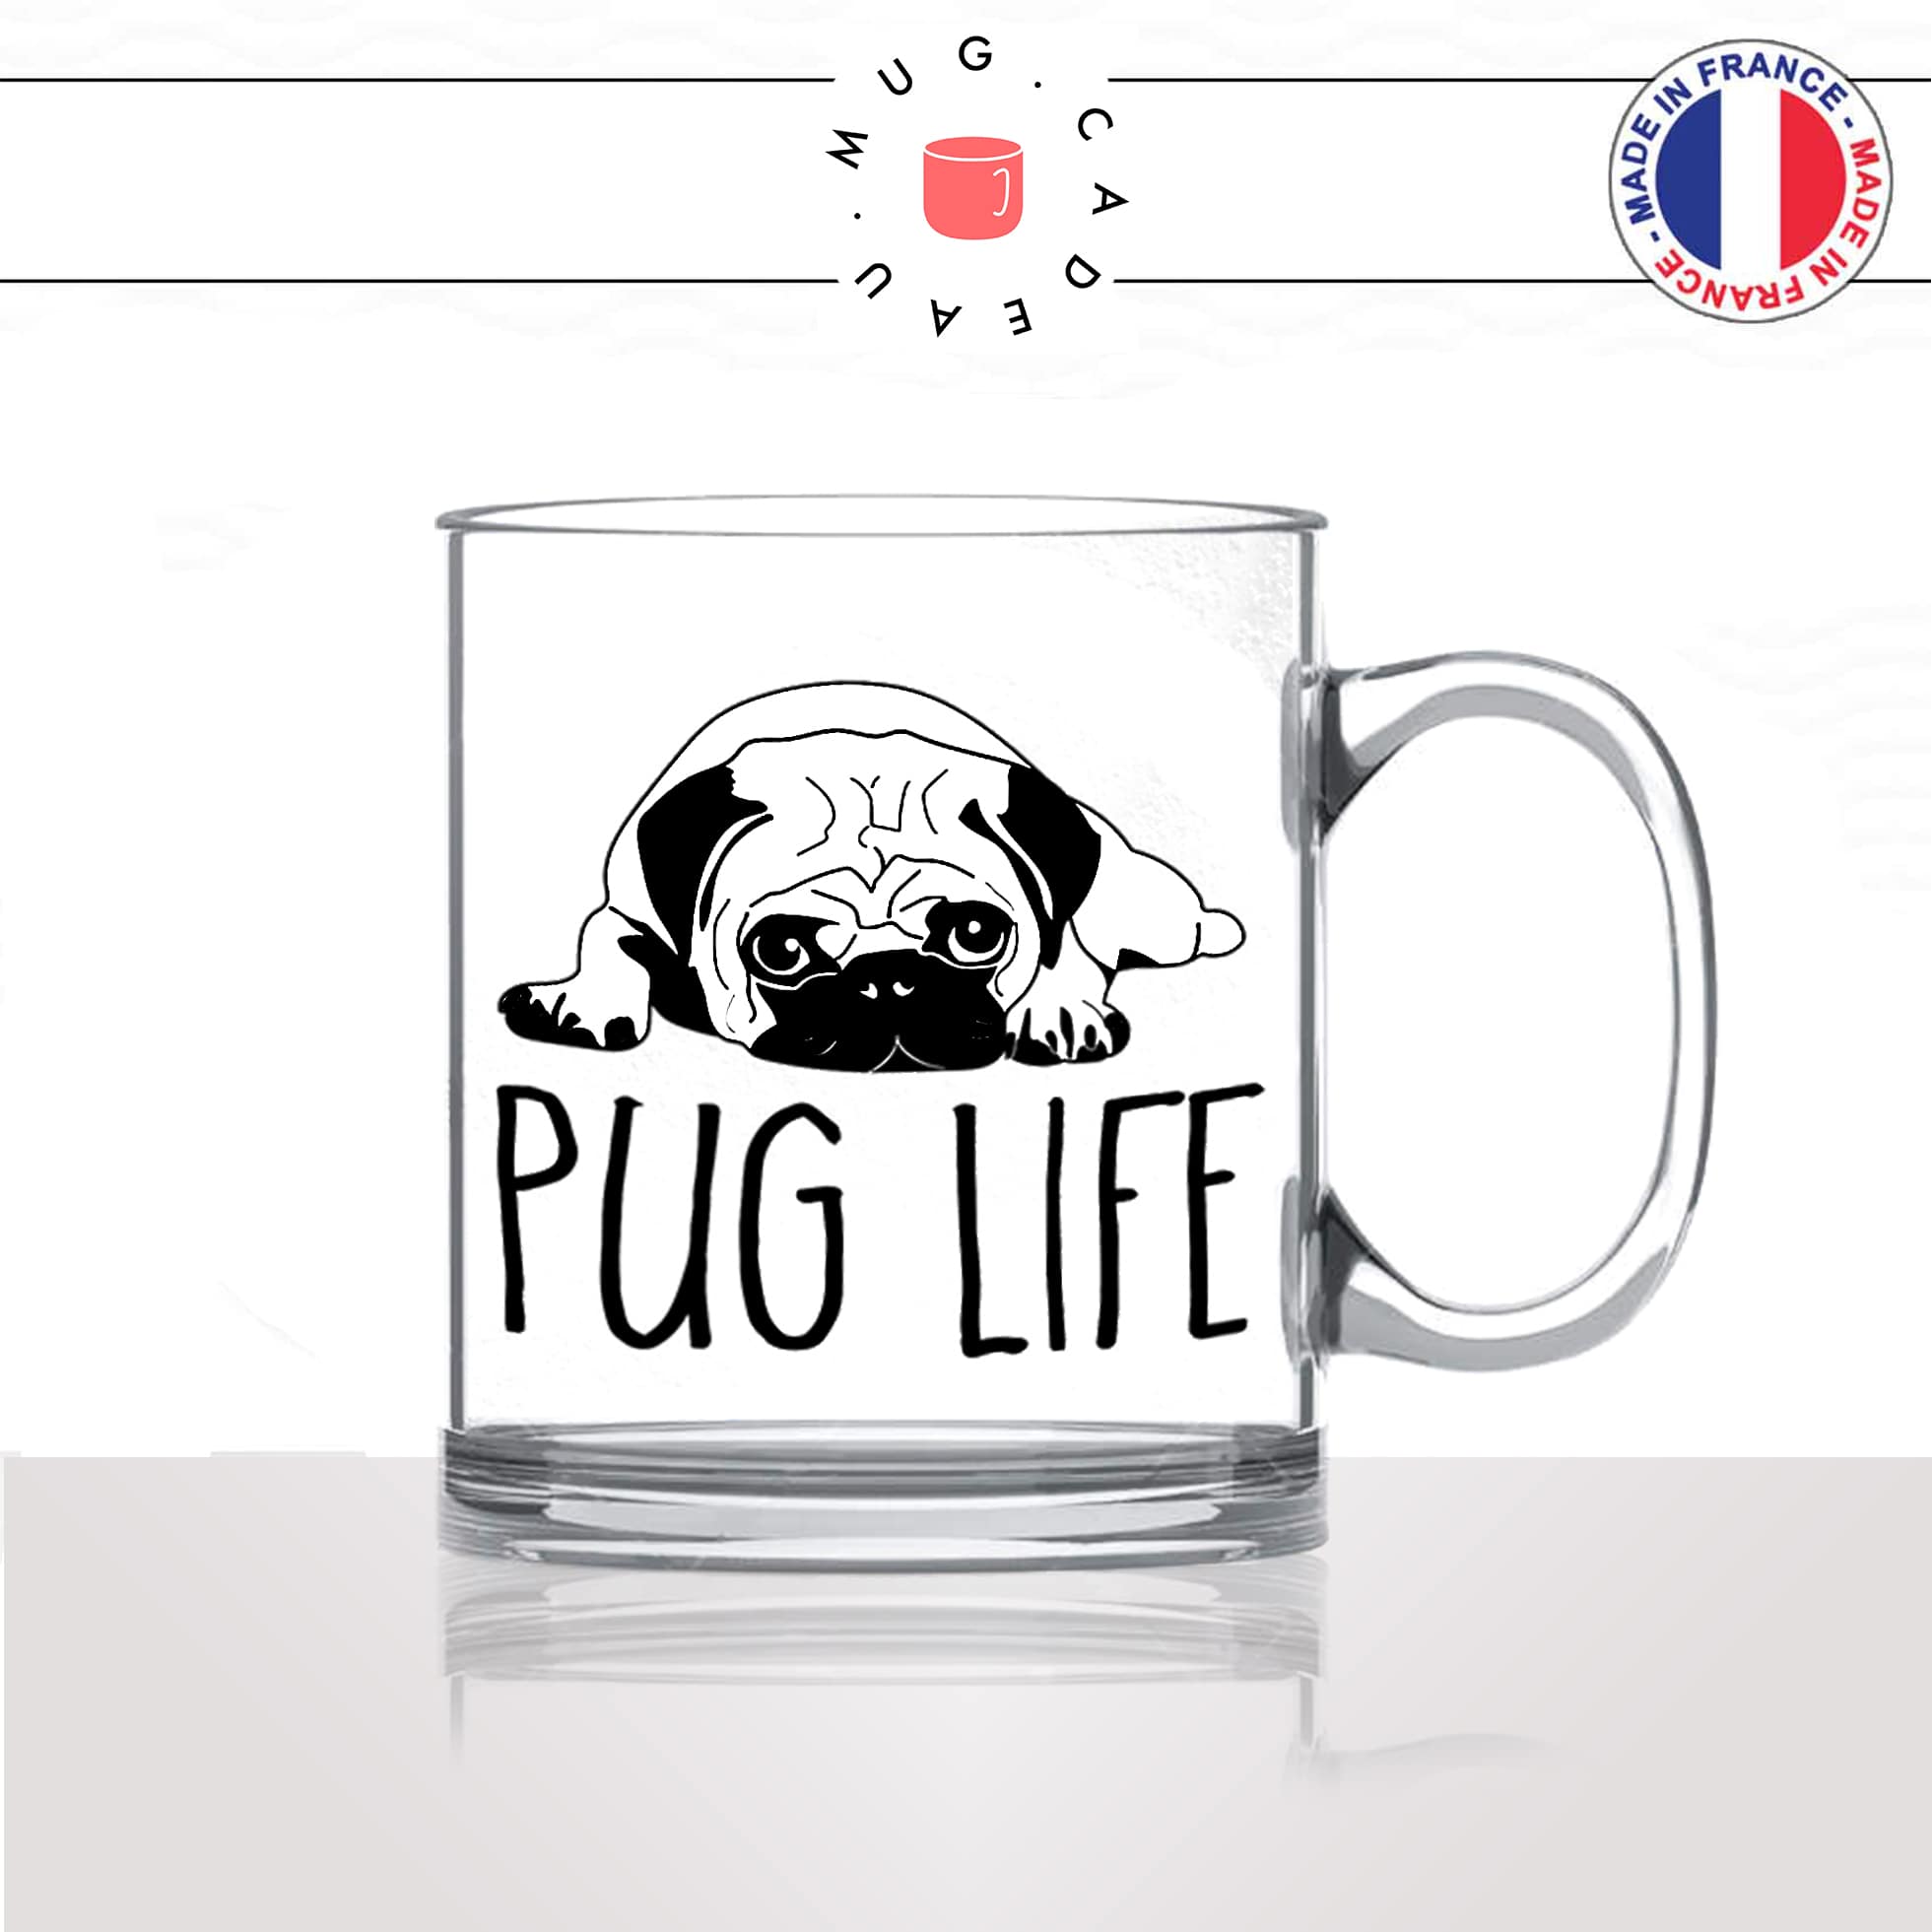 tasse-mug-en-verre-glass-pug-life-race-dog-humour-chien-amour-mignon-animal-chiot-noir-fun-café-thé-idée-cadeau-original-personnalisé2-min